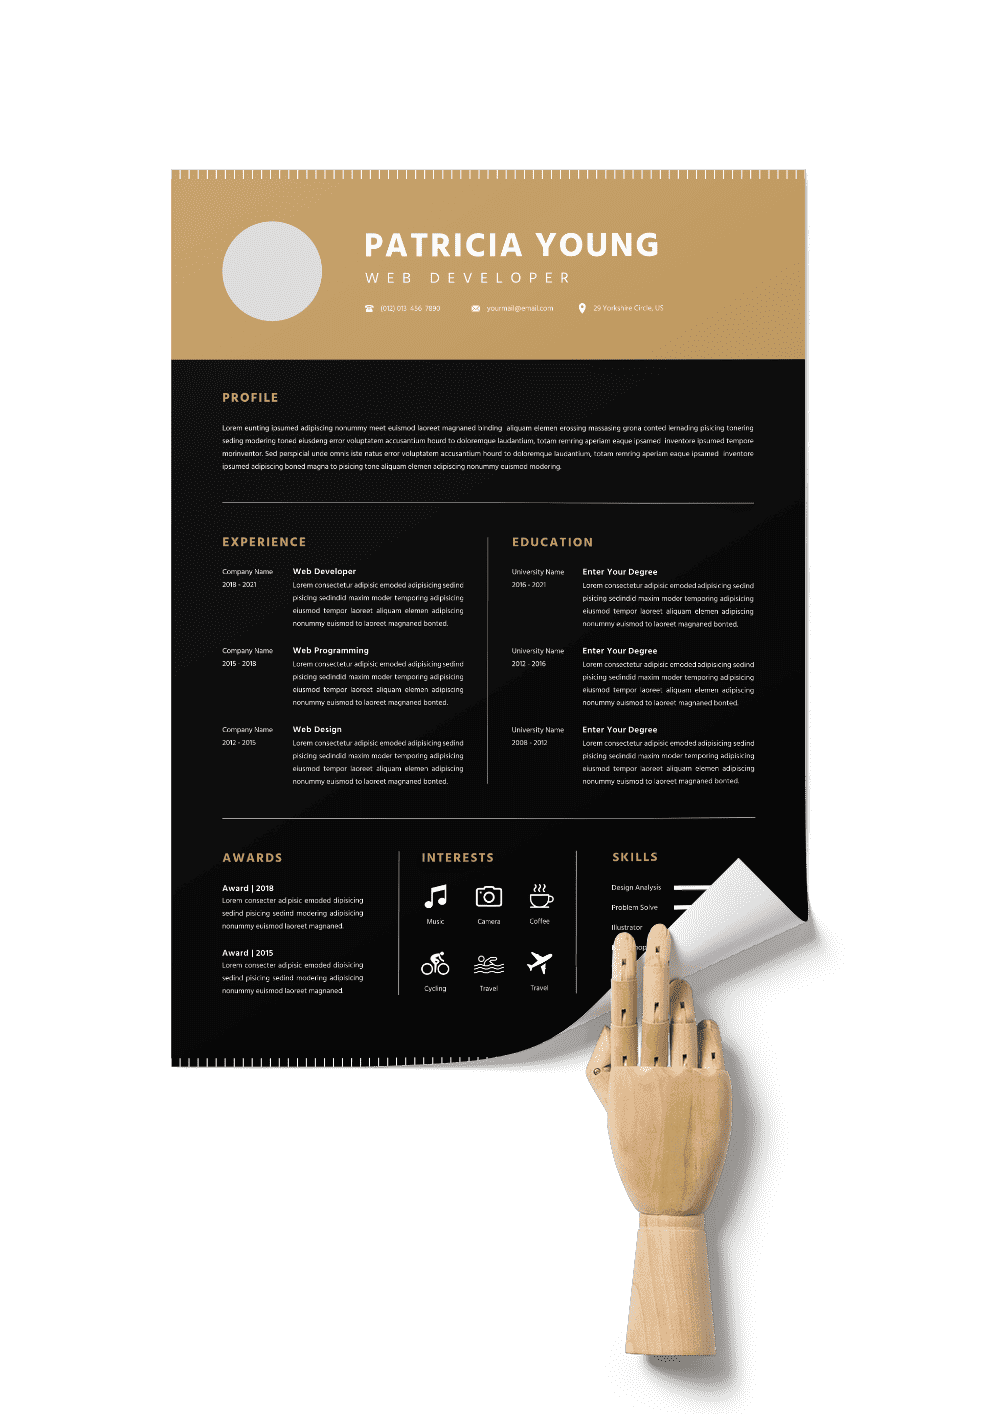 CV #99 Patricia Young